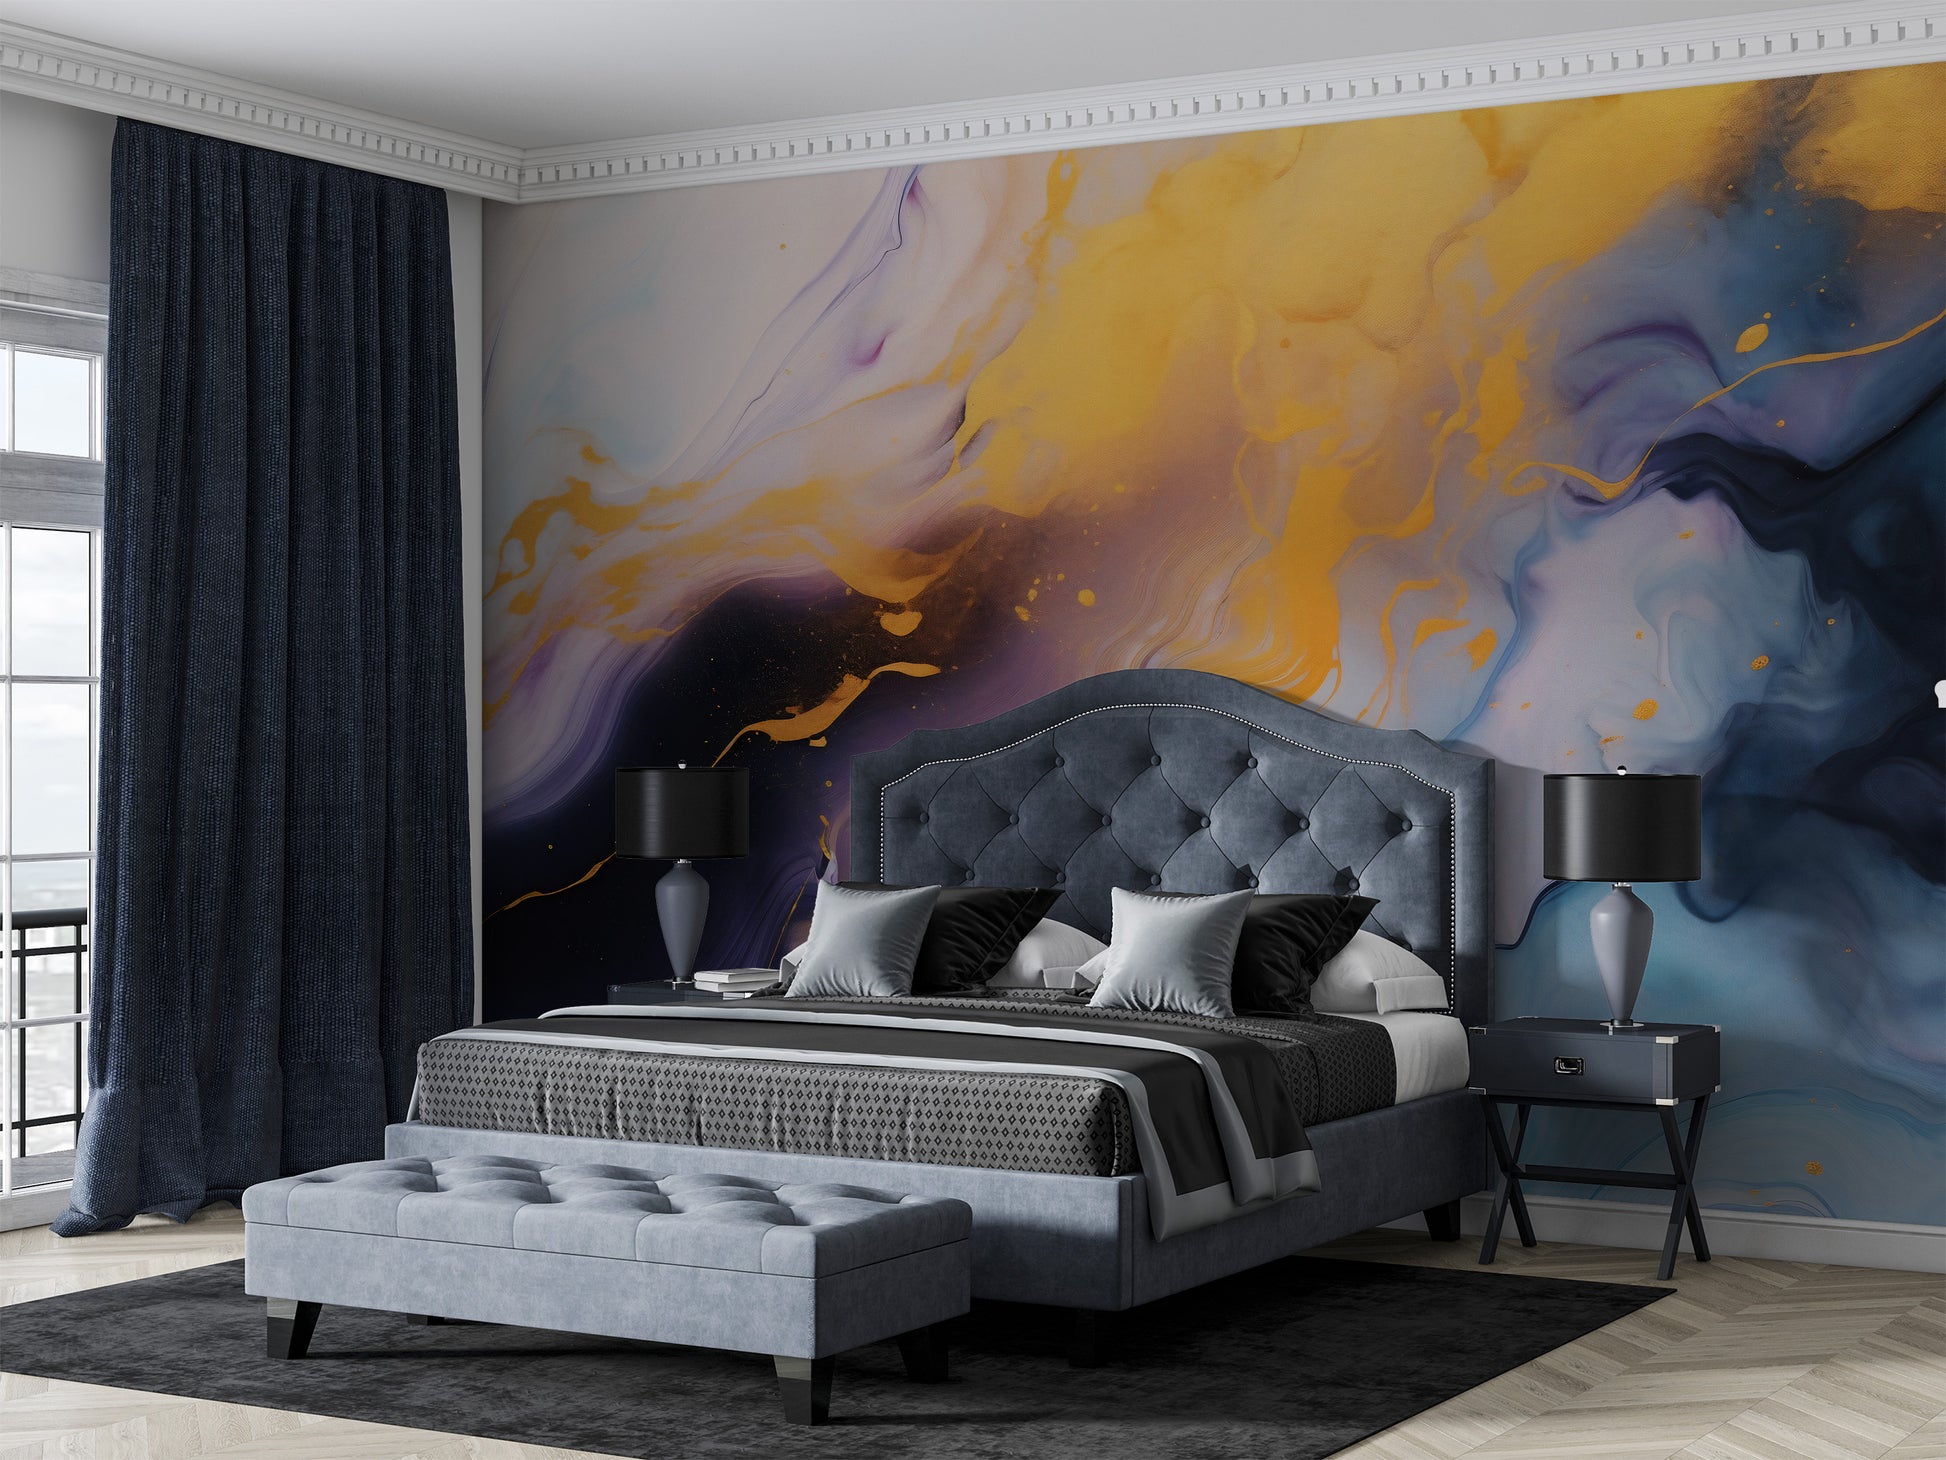 Self adhesive Wallpaper, Wallpaper & wall coverings